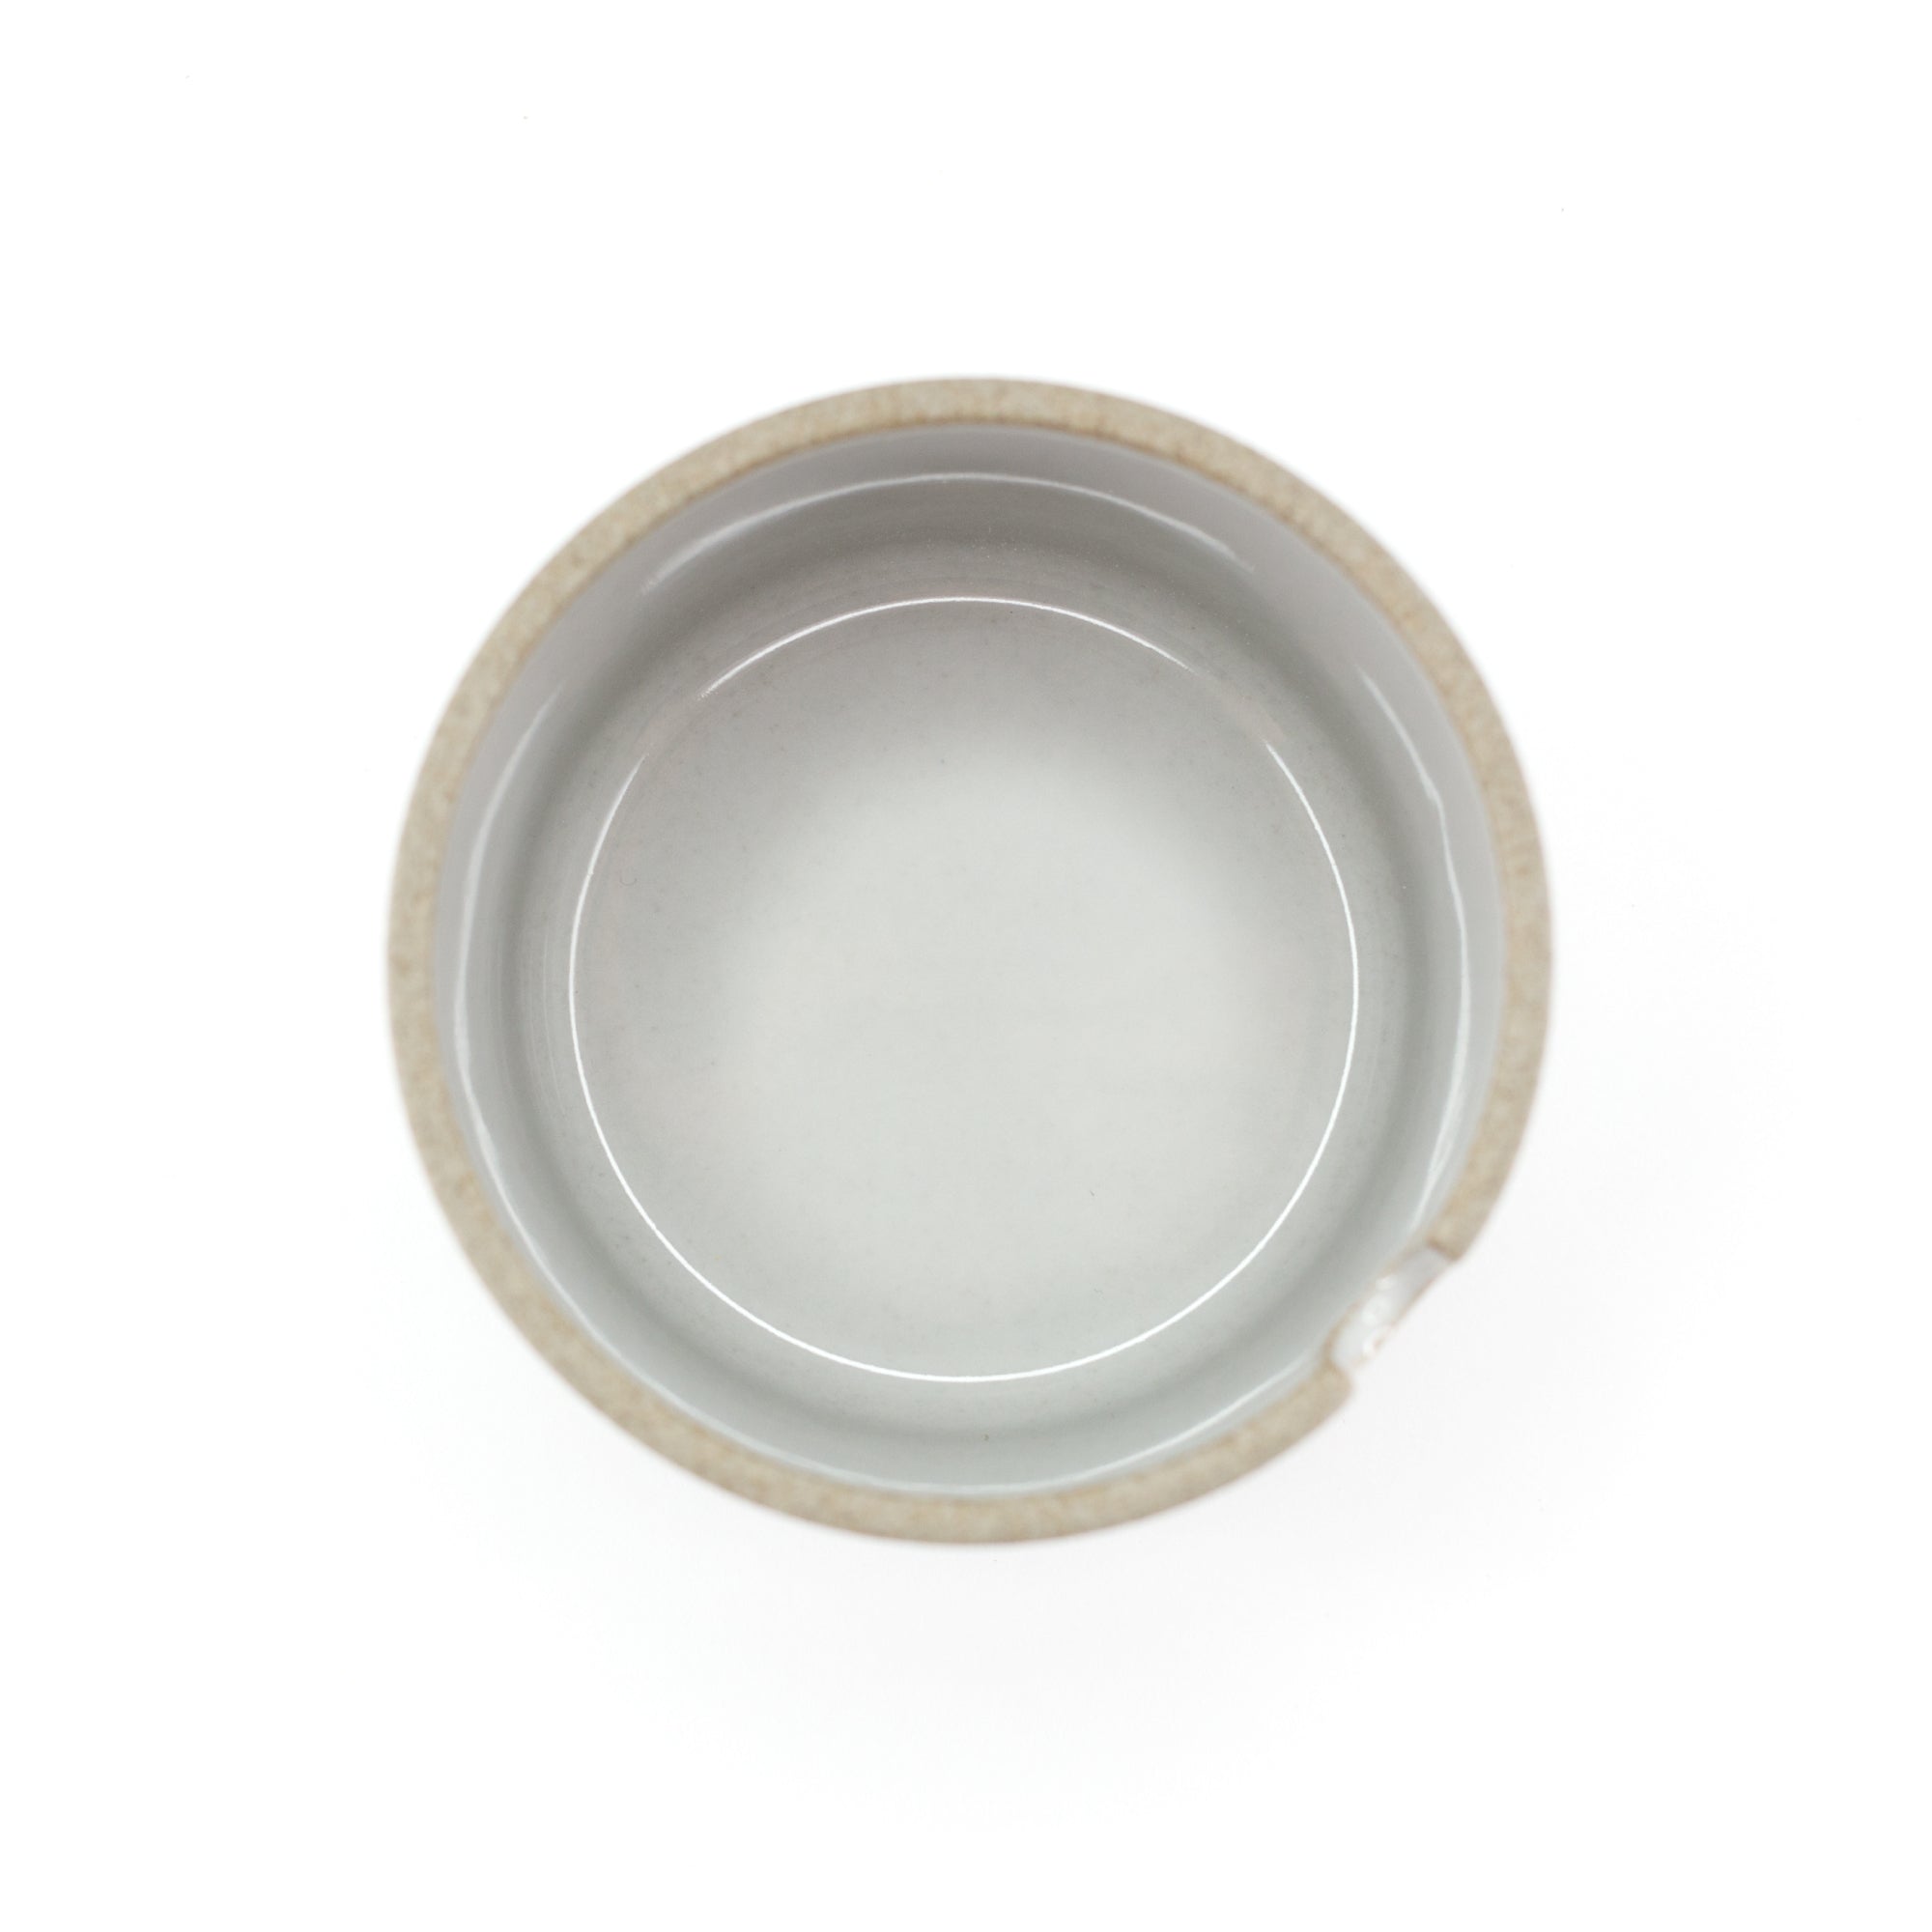 Hasami - Sugar Bowl in Grey